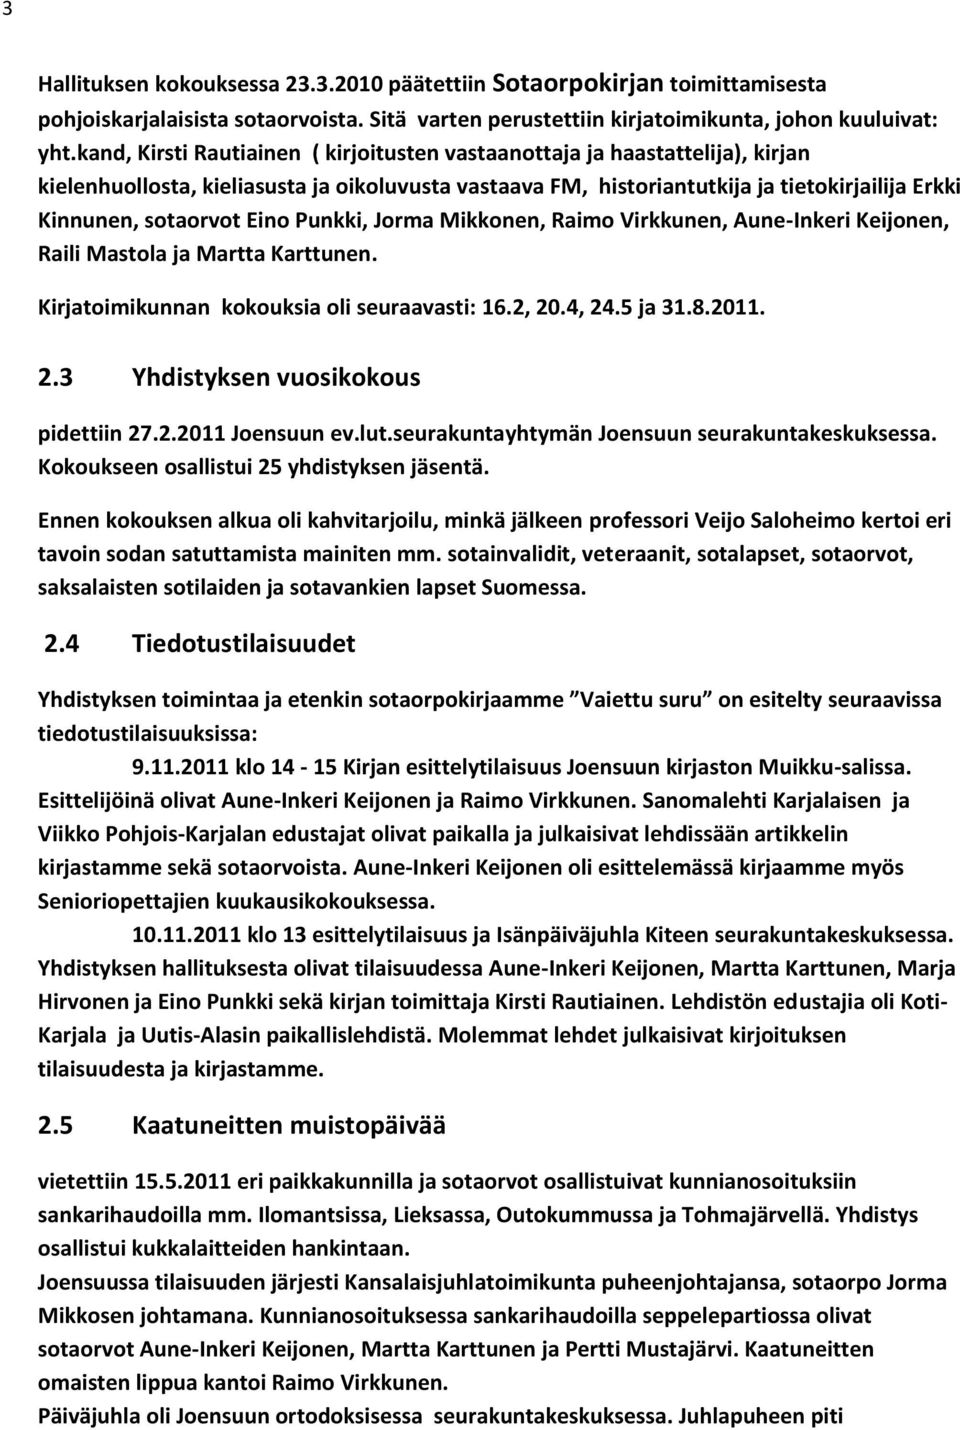 Eino Punkki, Jorma Mikkonen, Raimo Virkkunen, Aune-Inkeri Keijonen, Raili Mastola ja Martta Karttunen. Kirjatoimikunnan kokouksia oli seuraavasti: 16.2, 20.4, 24.5 ja 31.8.2011. 2.3 Yhdistyksen vuosikokous pidettiin 27.